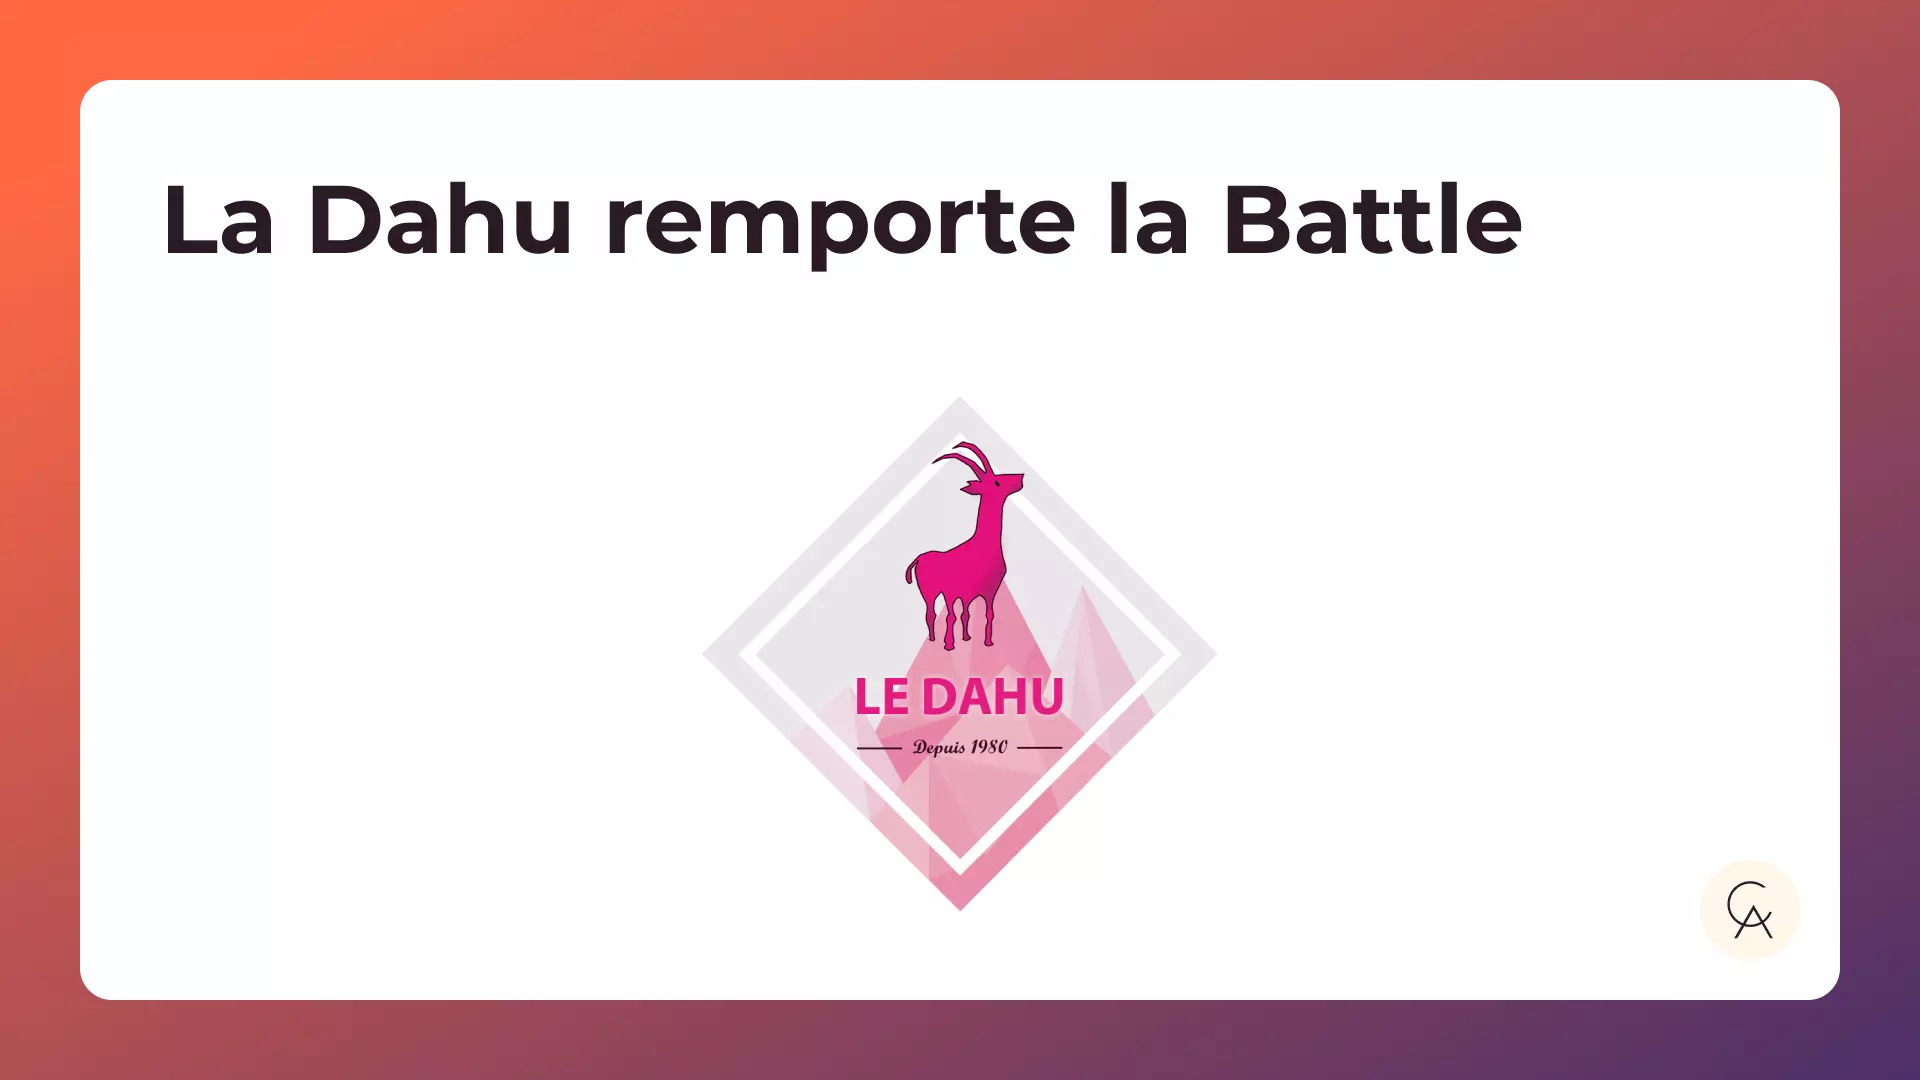 Logo du Dahu avec le texte "Le Dahu remporte la Battle"